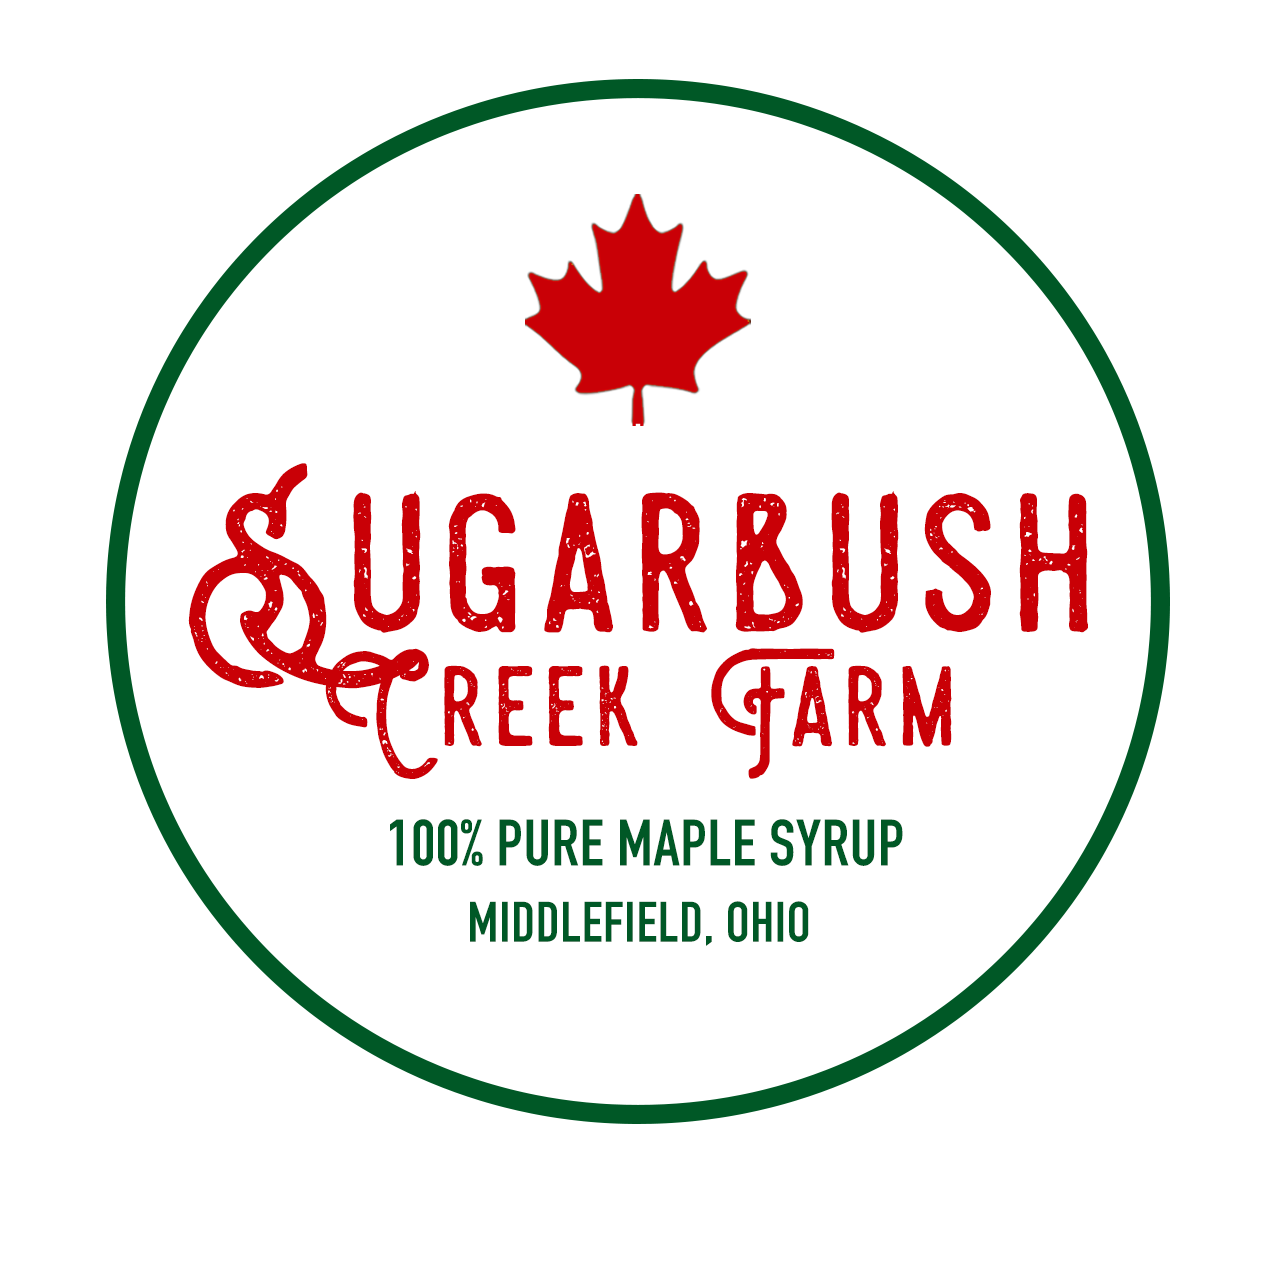 Sugarbush Creek Farm